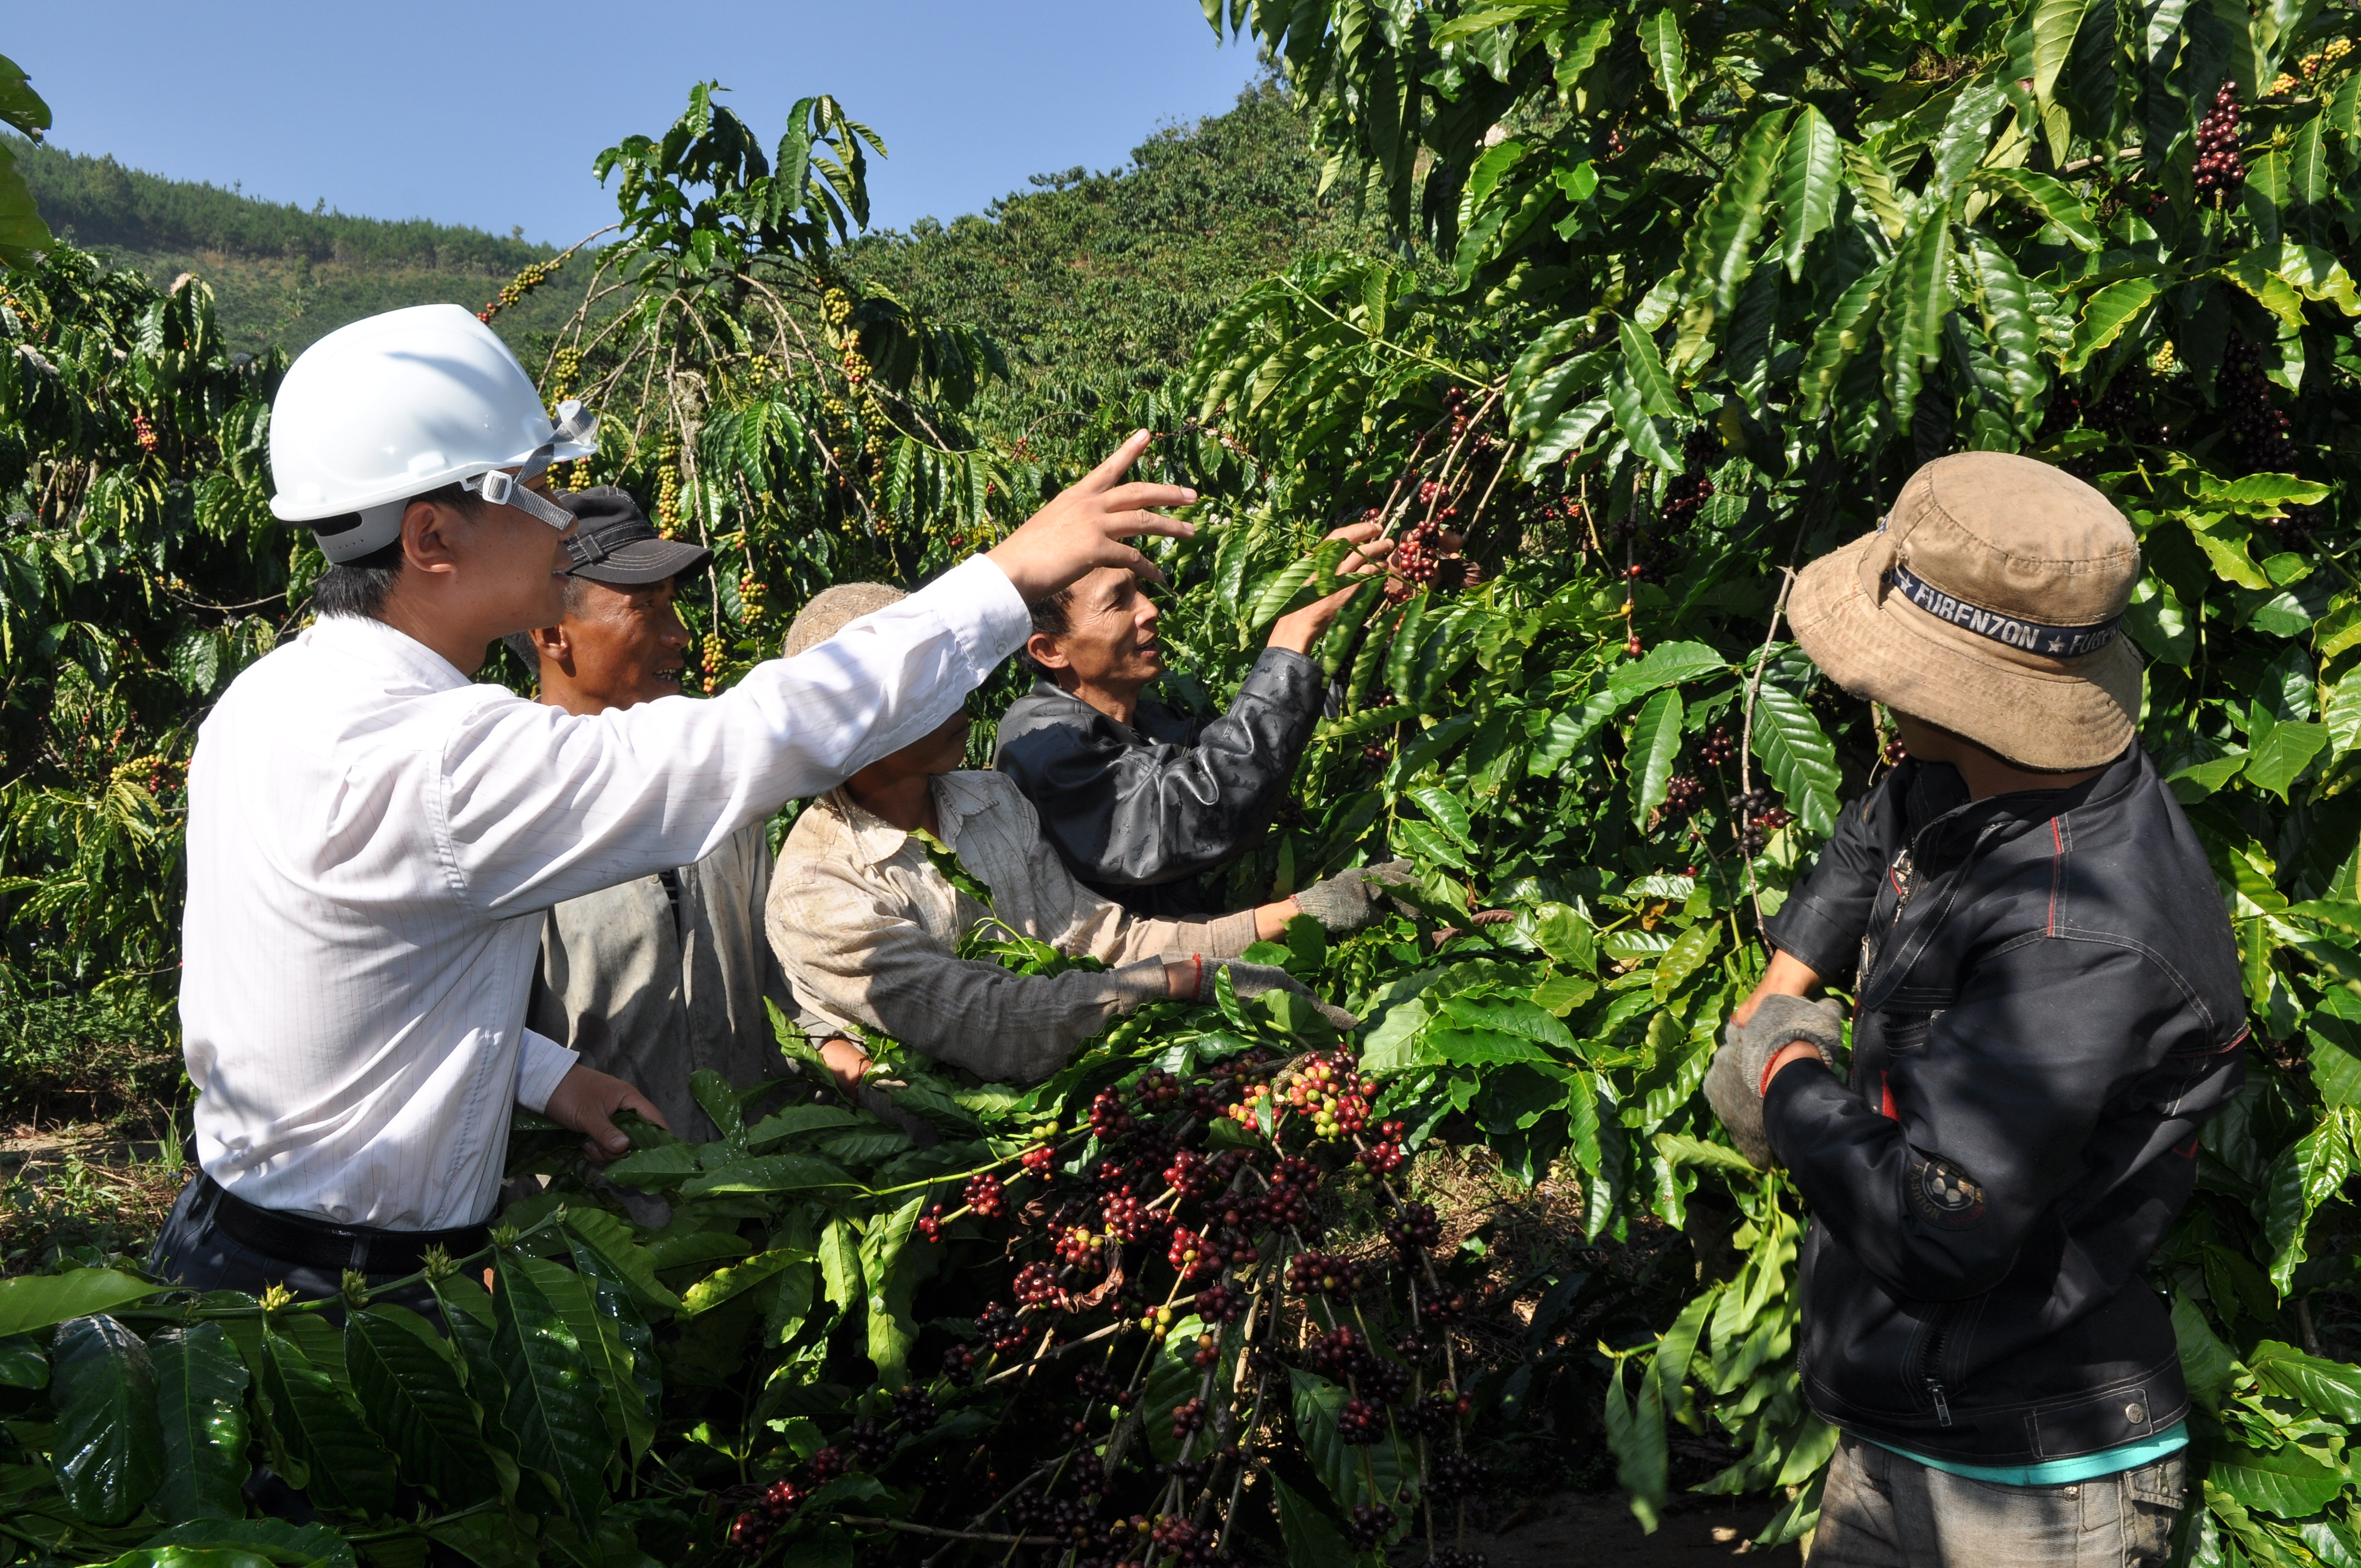 Quyết định thành lập Ban Chỉ đạo và Tổ thư ký giúp việc cho Ban Chỉ đạo tái canh cây cà phê trên địa bàn tỉnh Đắk Lắk giai đoạn 2016 - 2020